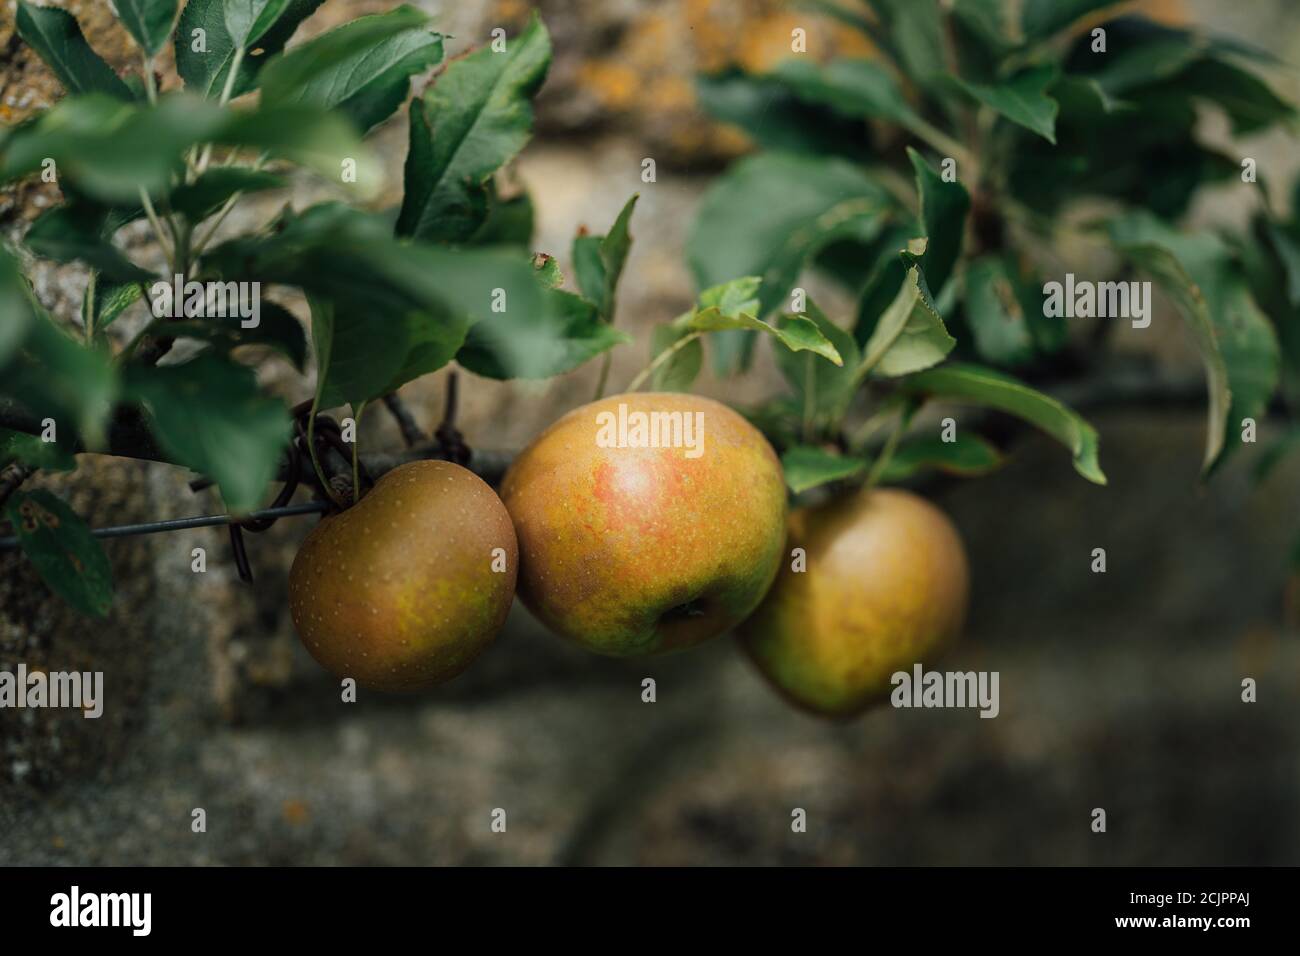 Egremont manzana reineta Foto de stock